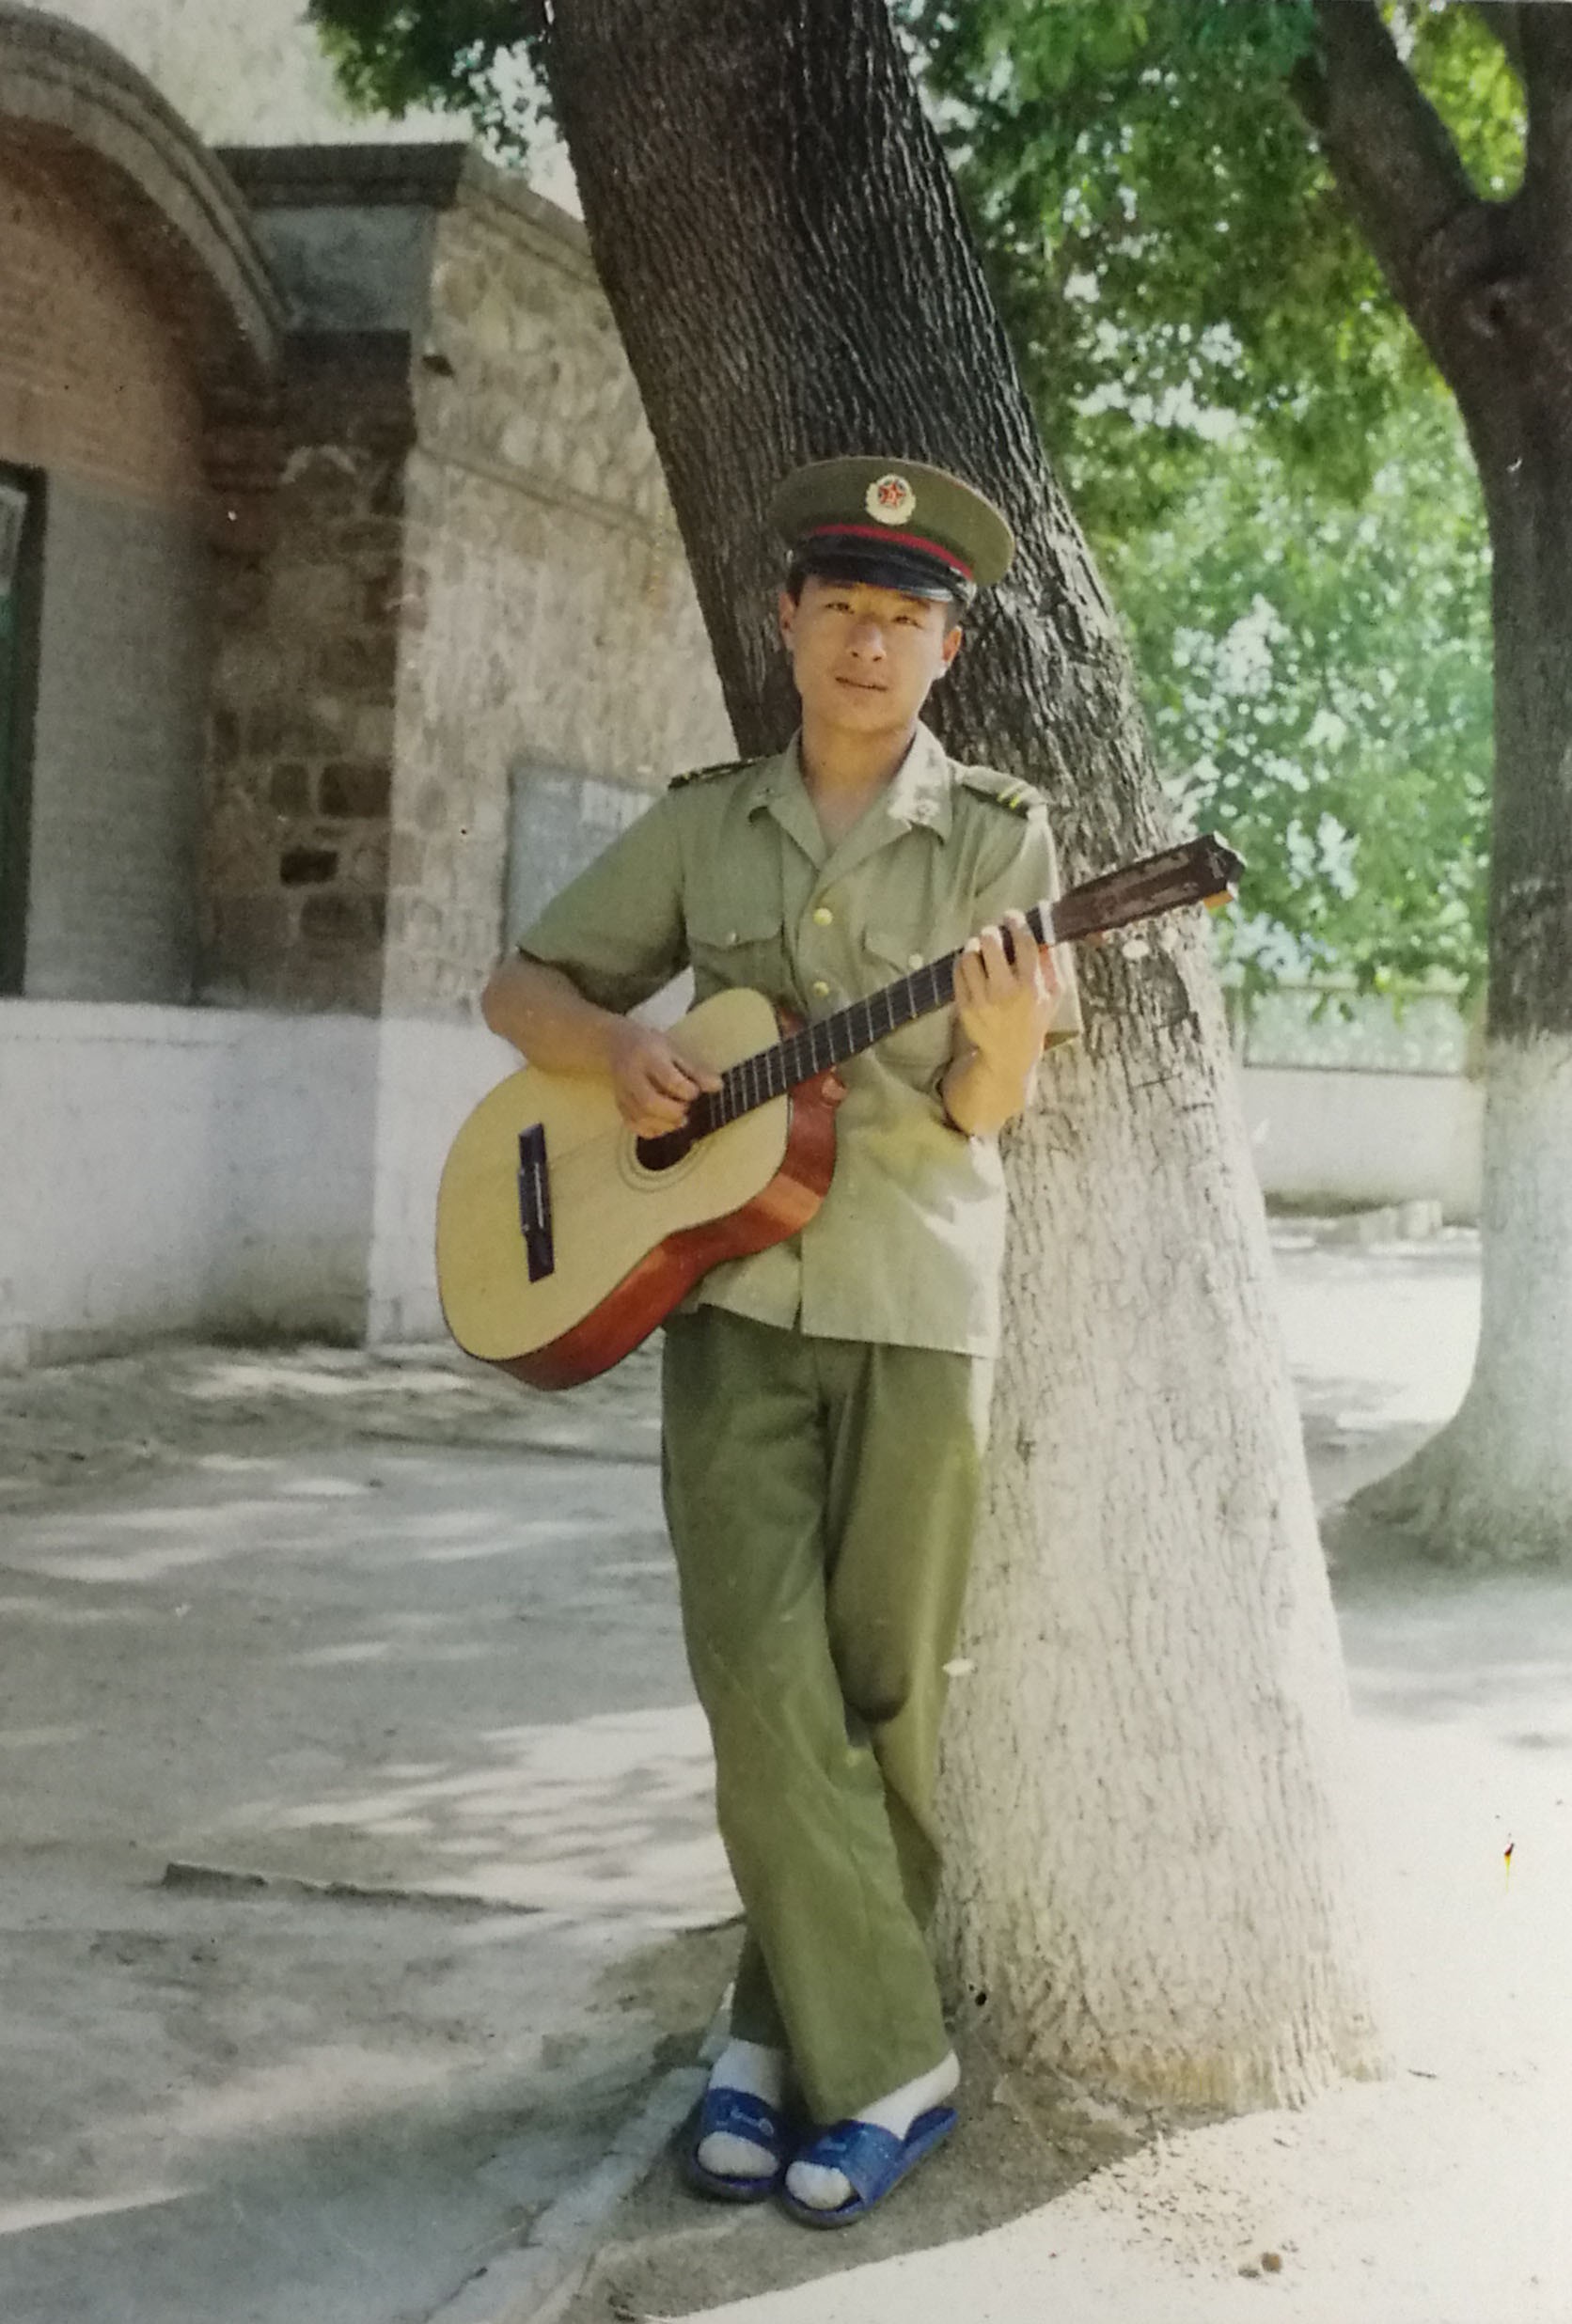 90年代陆军军装图片